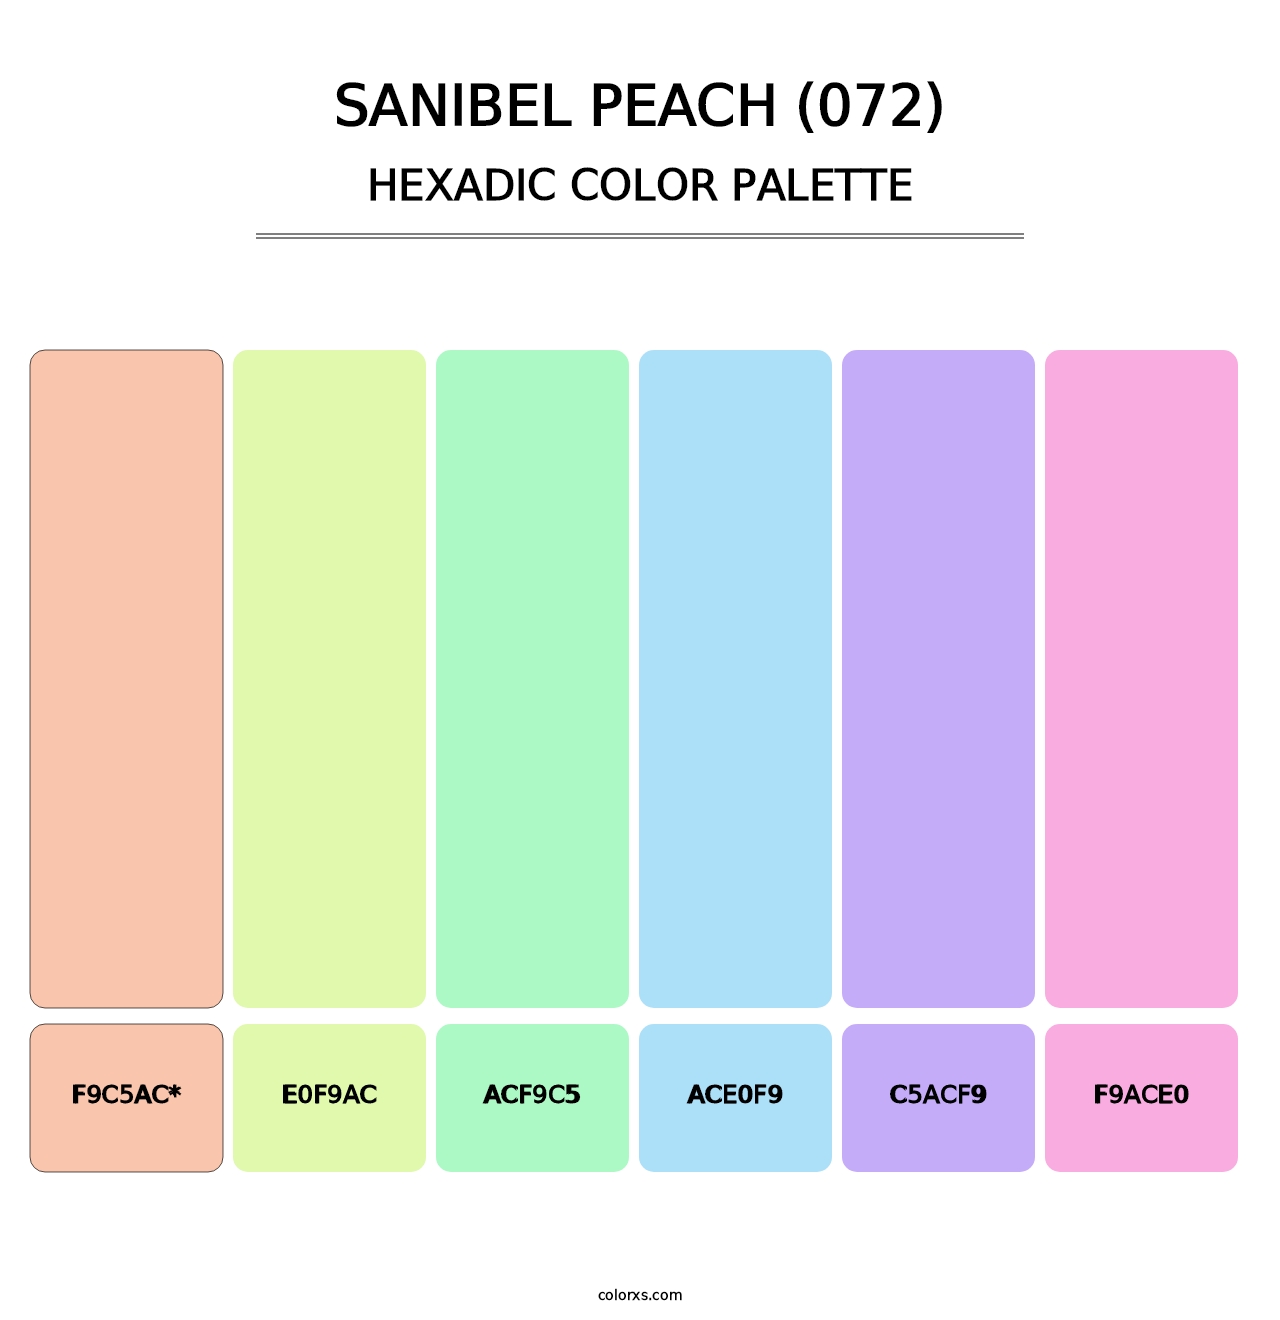 Sanibel Peach (072) - Hexadic Color Palette